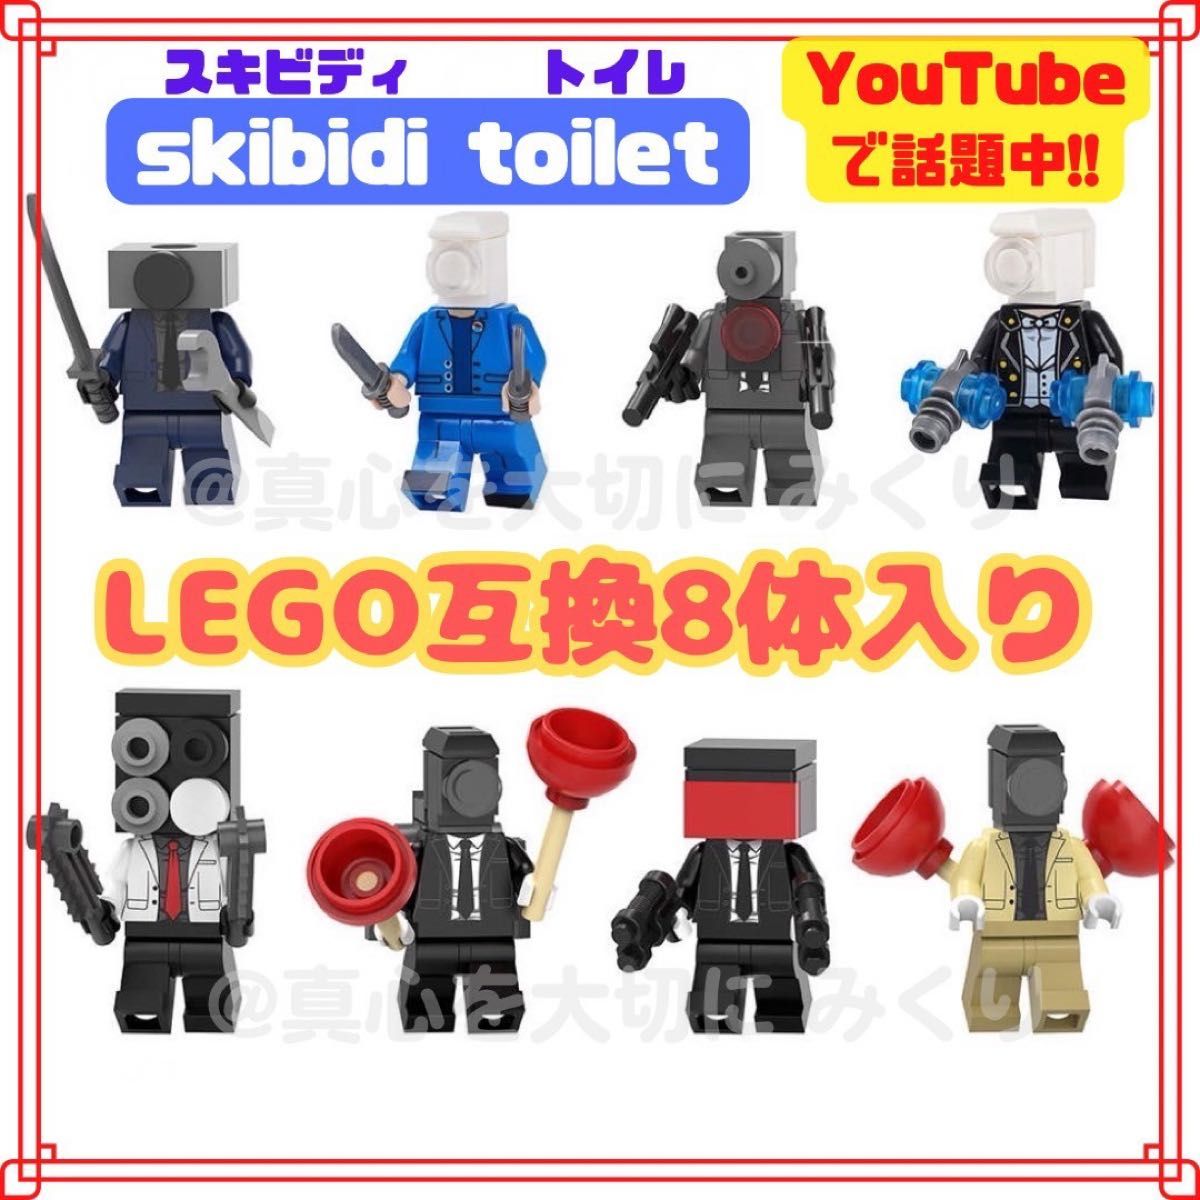 最新 スキビディトイレ レゴ 互換 ミニフィグ ブロック LEGO レゴ互換 ミニフィギュア YouTube ゲーム セット